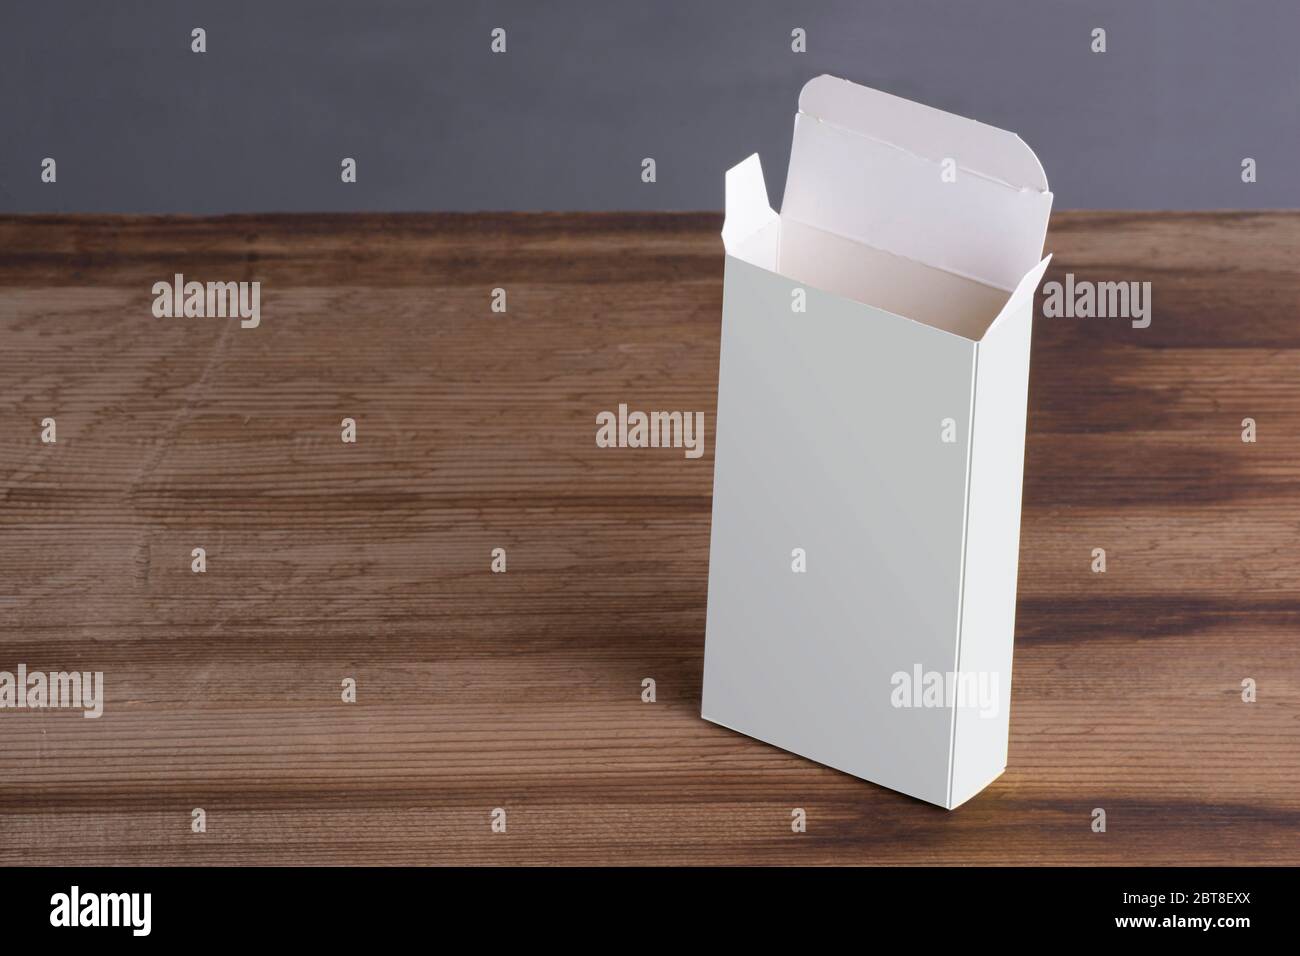 Vertikal geöffnet leere Pillenbox auf Holztisch Hintergrund, Mock-up-Serie Vorlage bereit für Ihr Design, Abdeckung Auswahl-Pfad enthalten Stockfoto